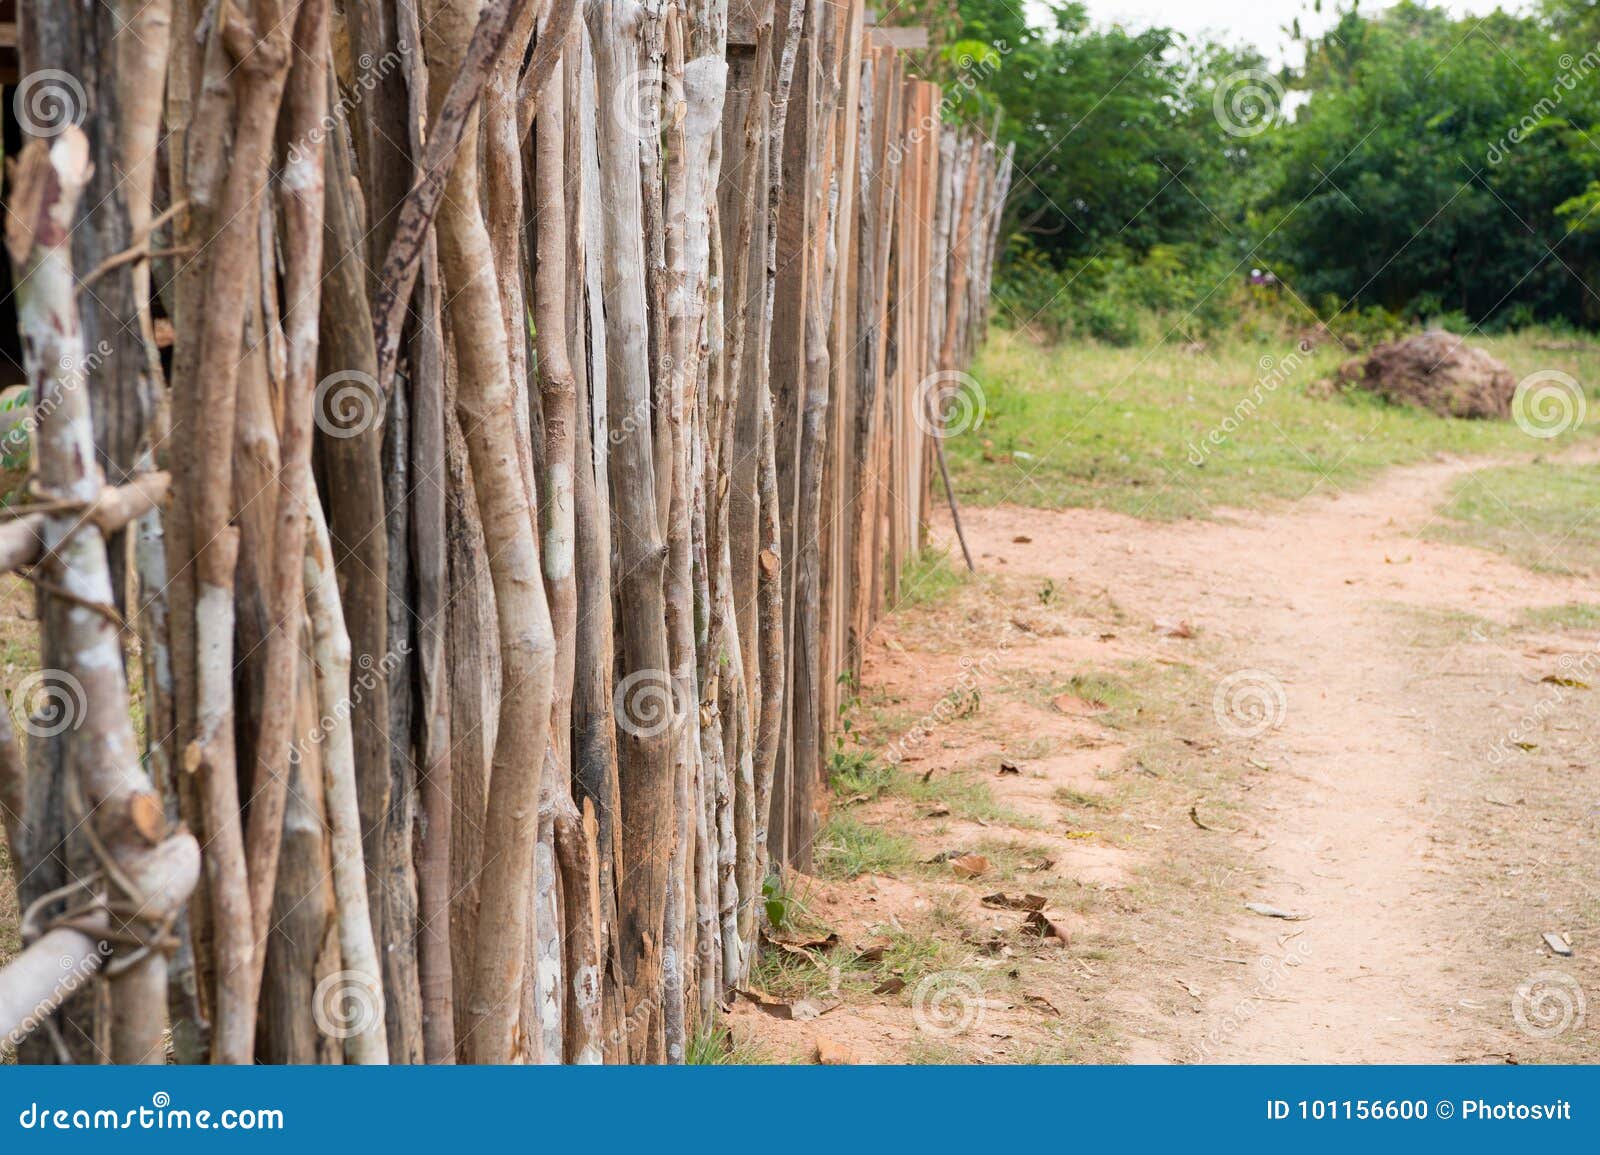 palisade or fence in countryside in boca de valeria, brazil.